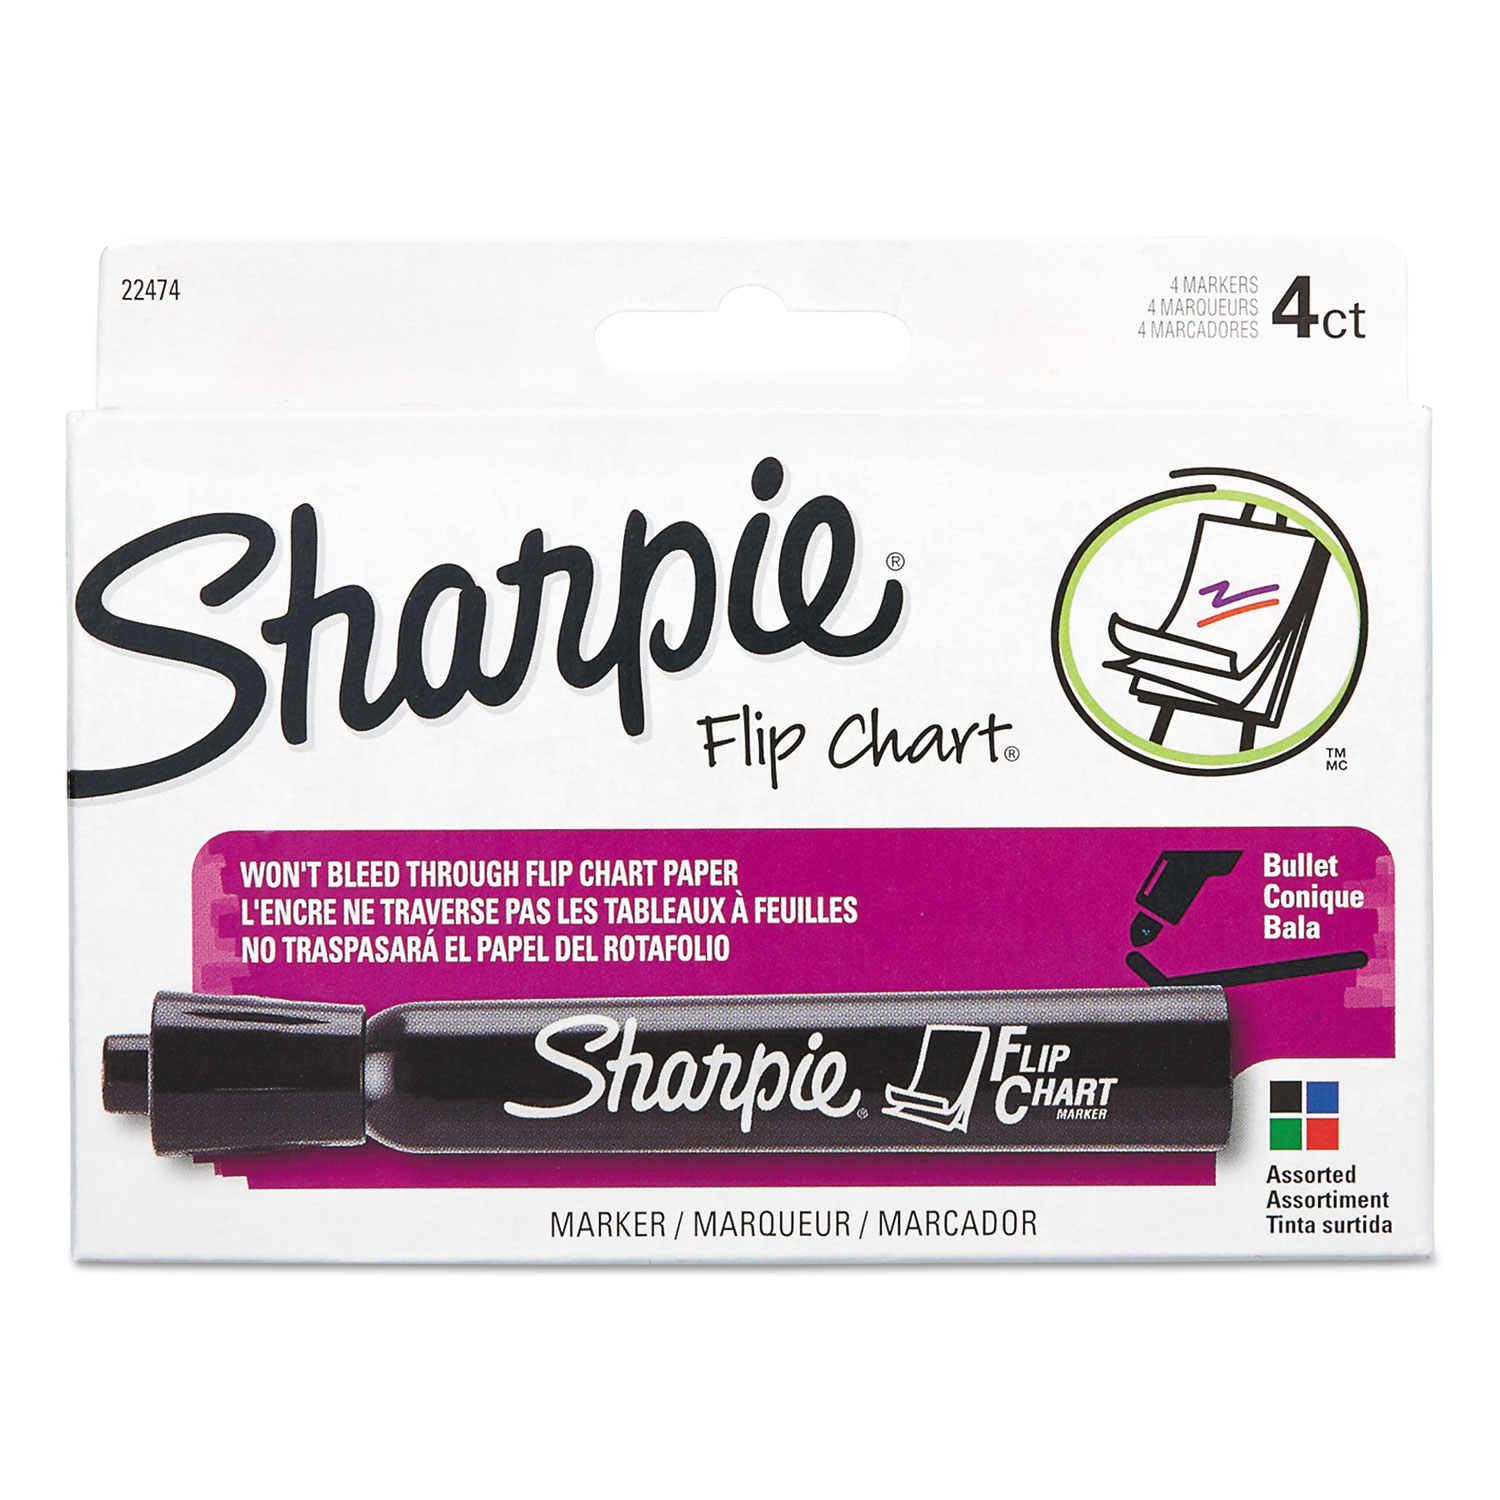 DEAL New 8 PACK Sharpie Flip Chart Marker Bullet Tip Black SAN1760445 LOW Odor